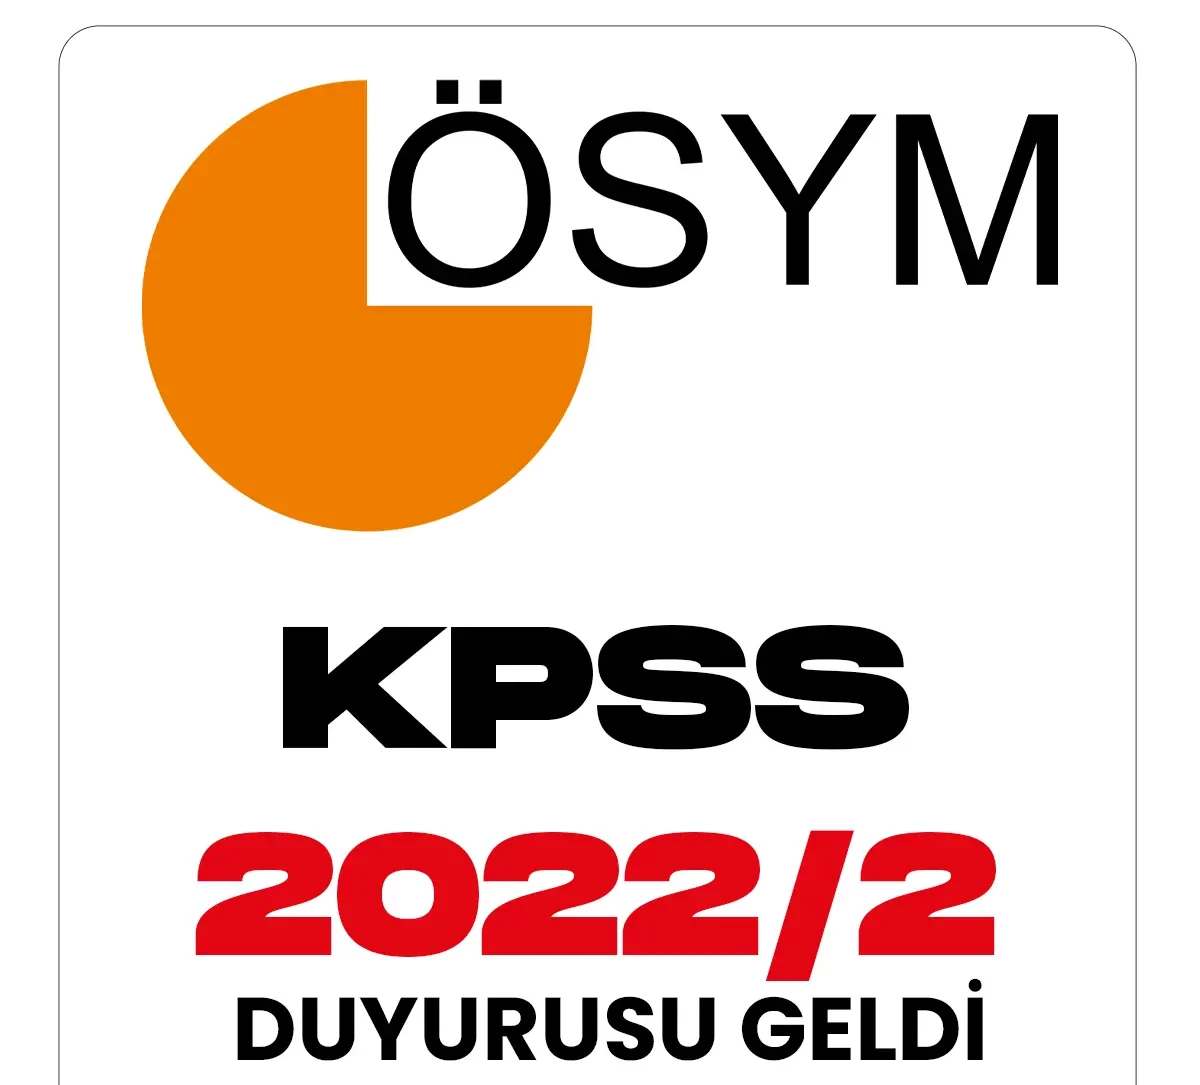 KPSS 2022 2 Yerleştirme sonuçları.